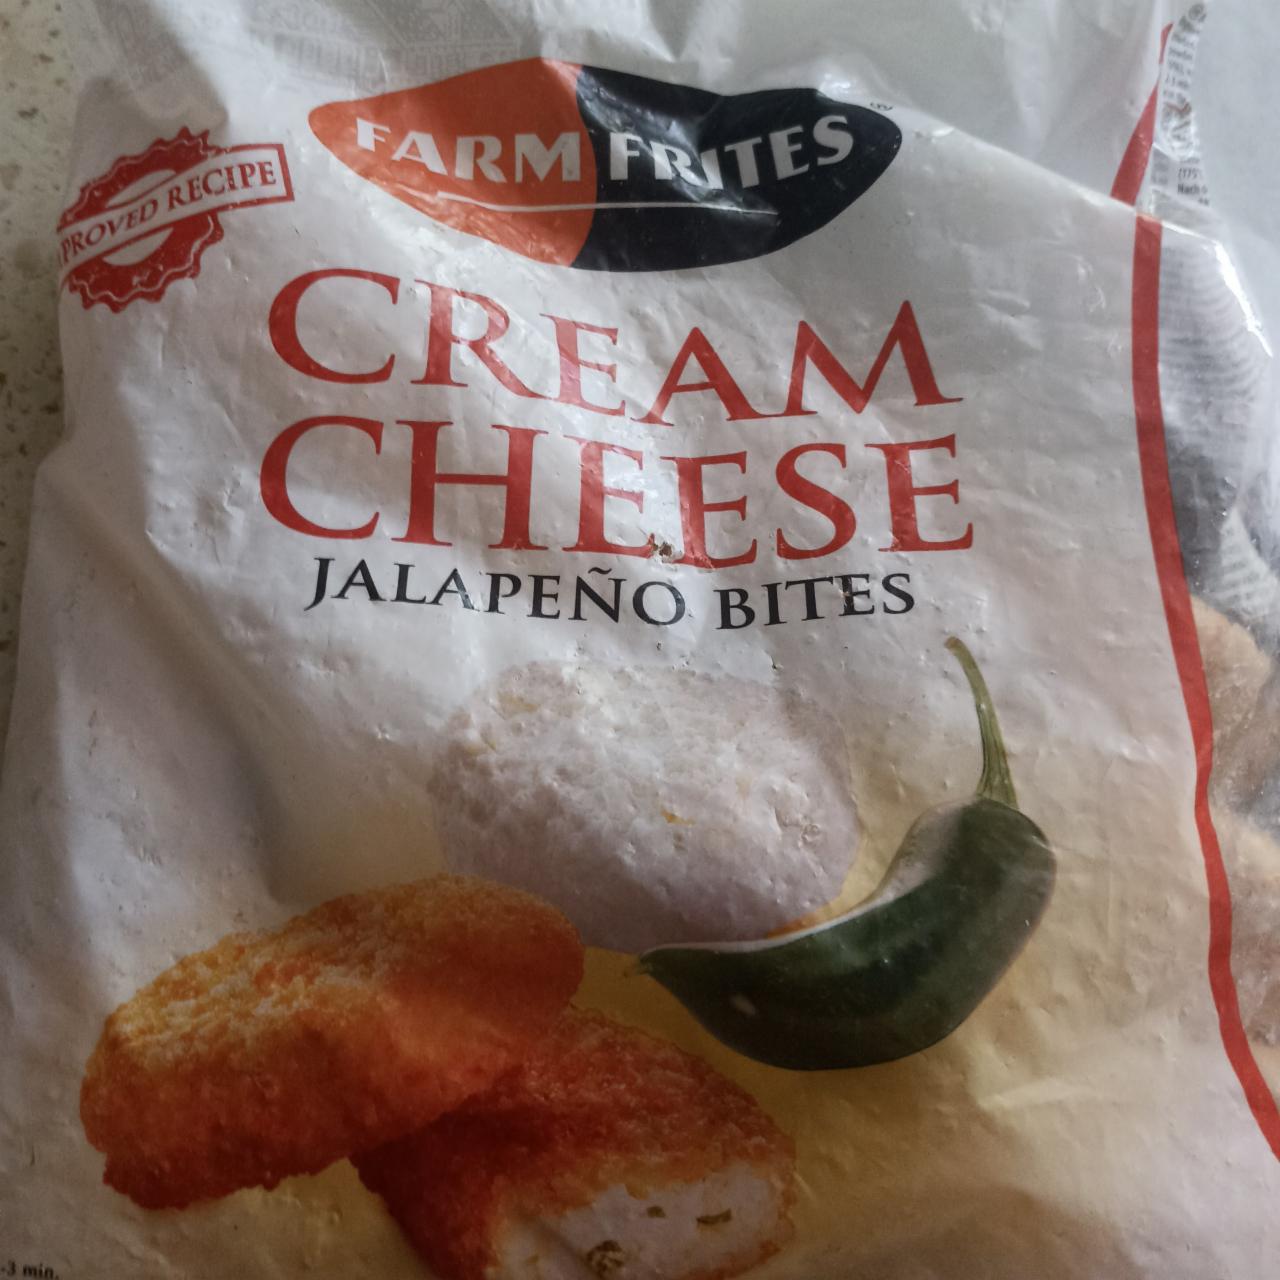 Zdjęcia - Cream cheese jalapeno bites Farm frites